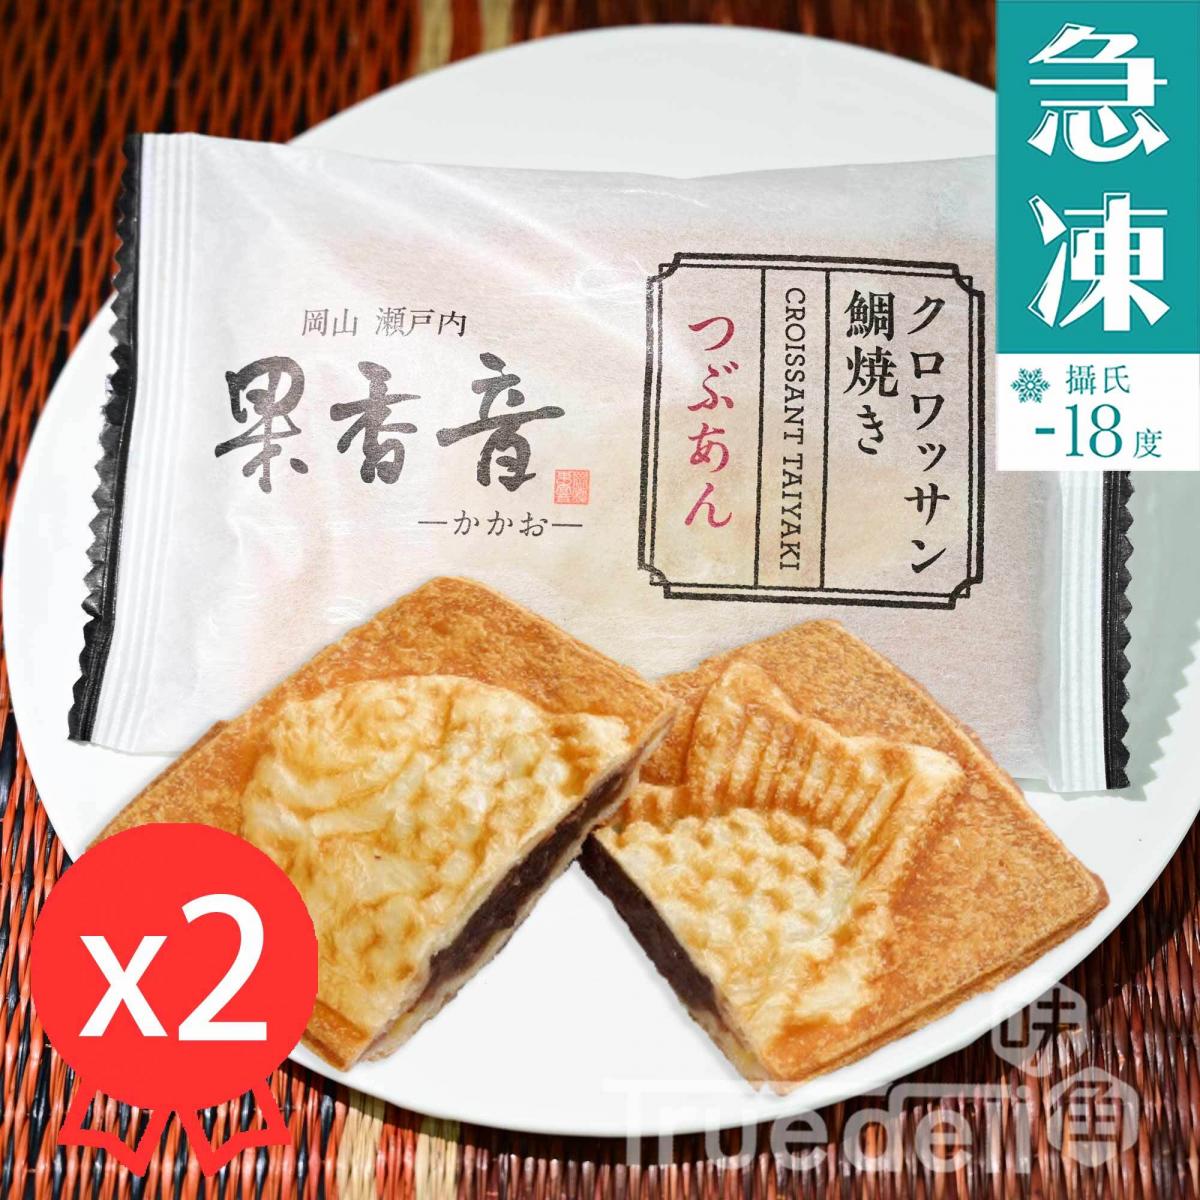 日本酥皮鯛魚燒 - 紅豆味, 80g x 2件 (急凍 -18°C)